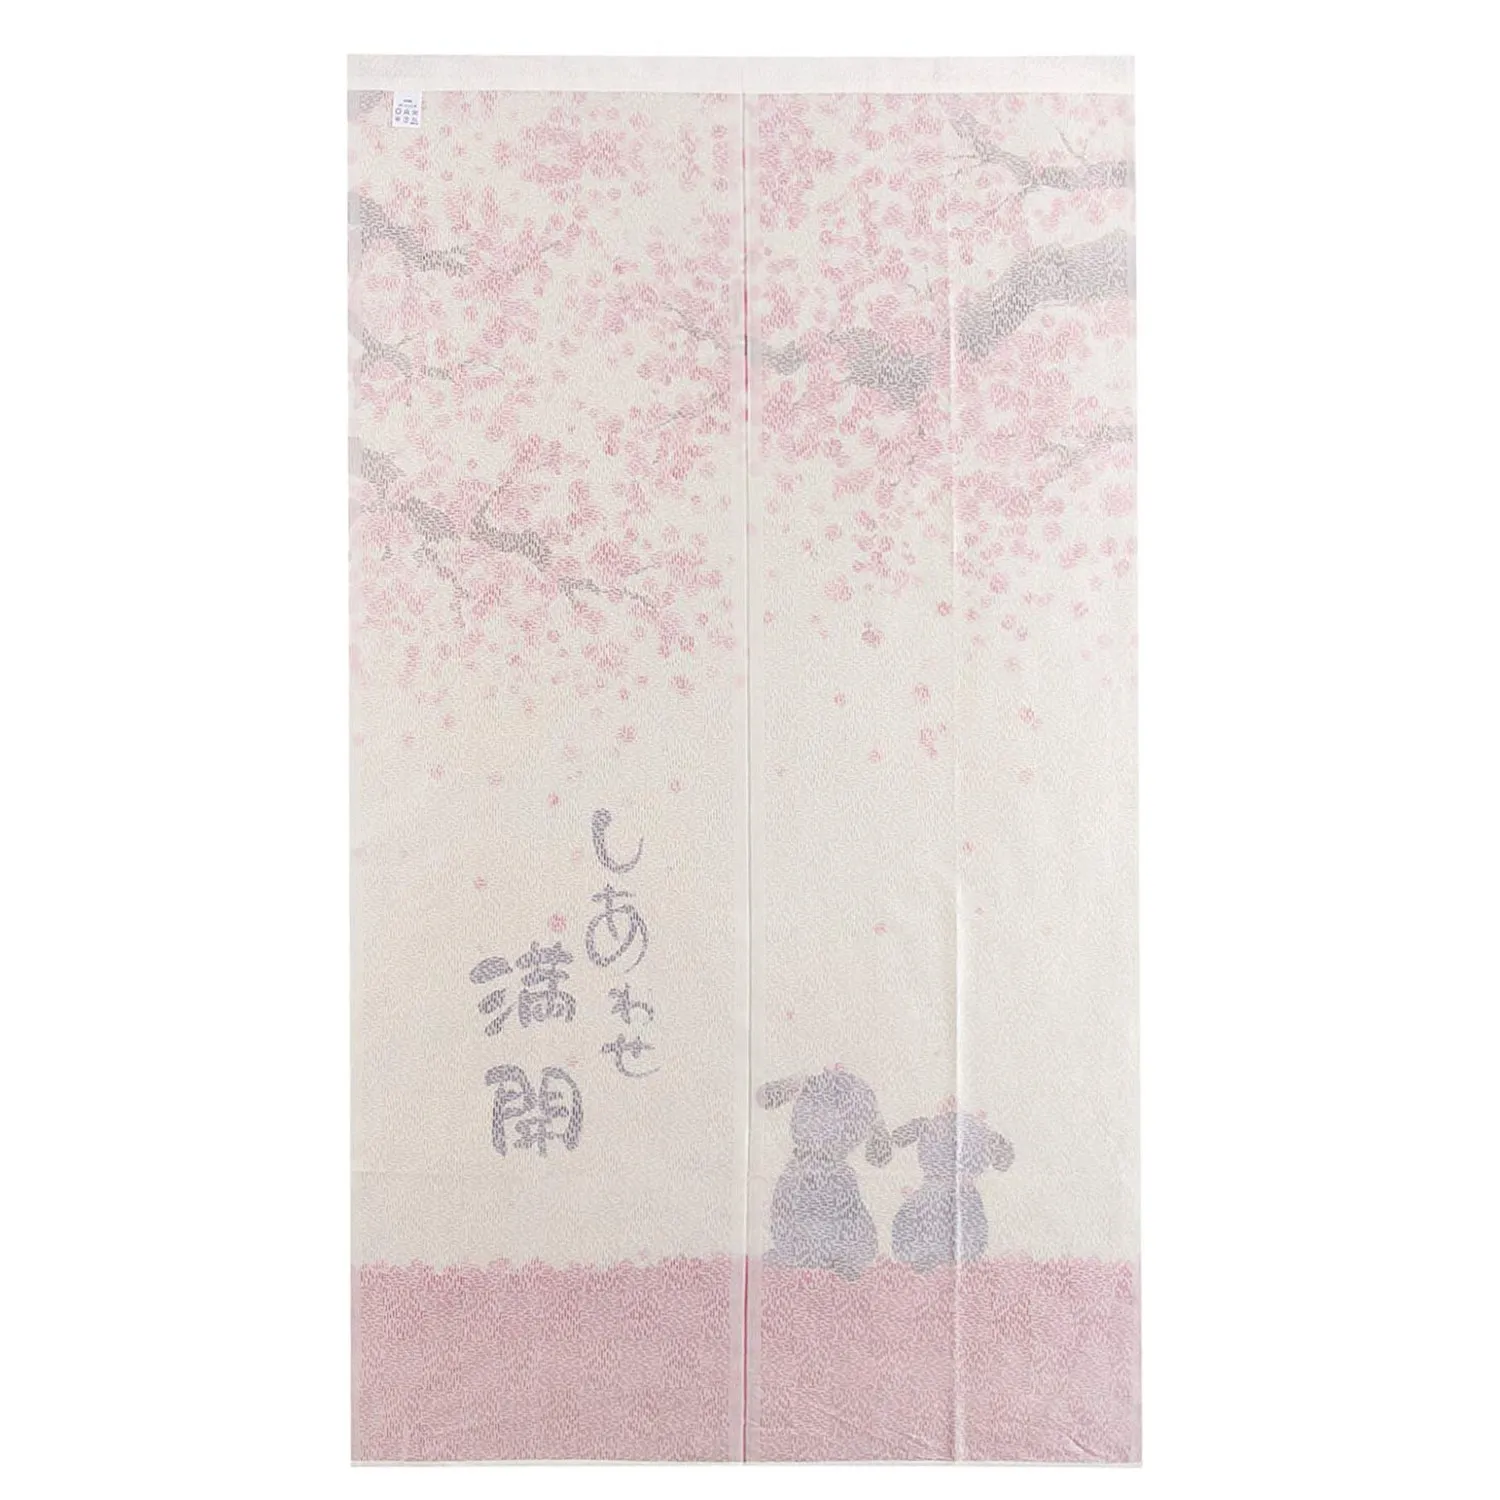 Легкая дверная занавеска в японском стиле 85X150 см Happy Dogs Cherry Blossom